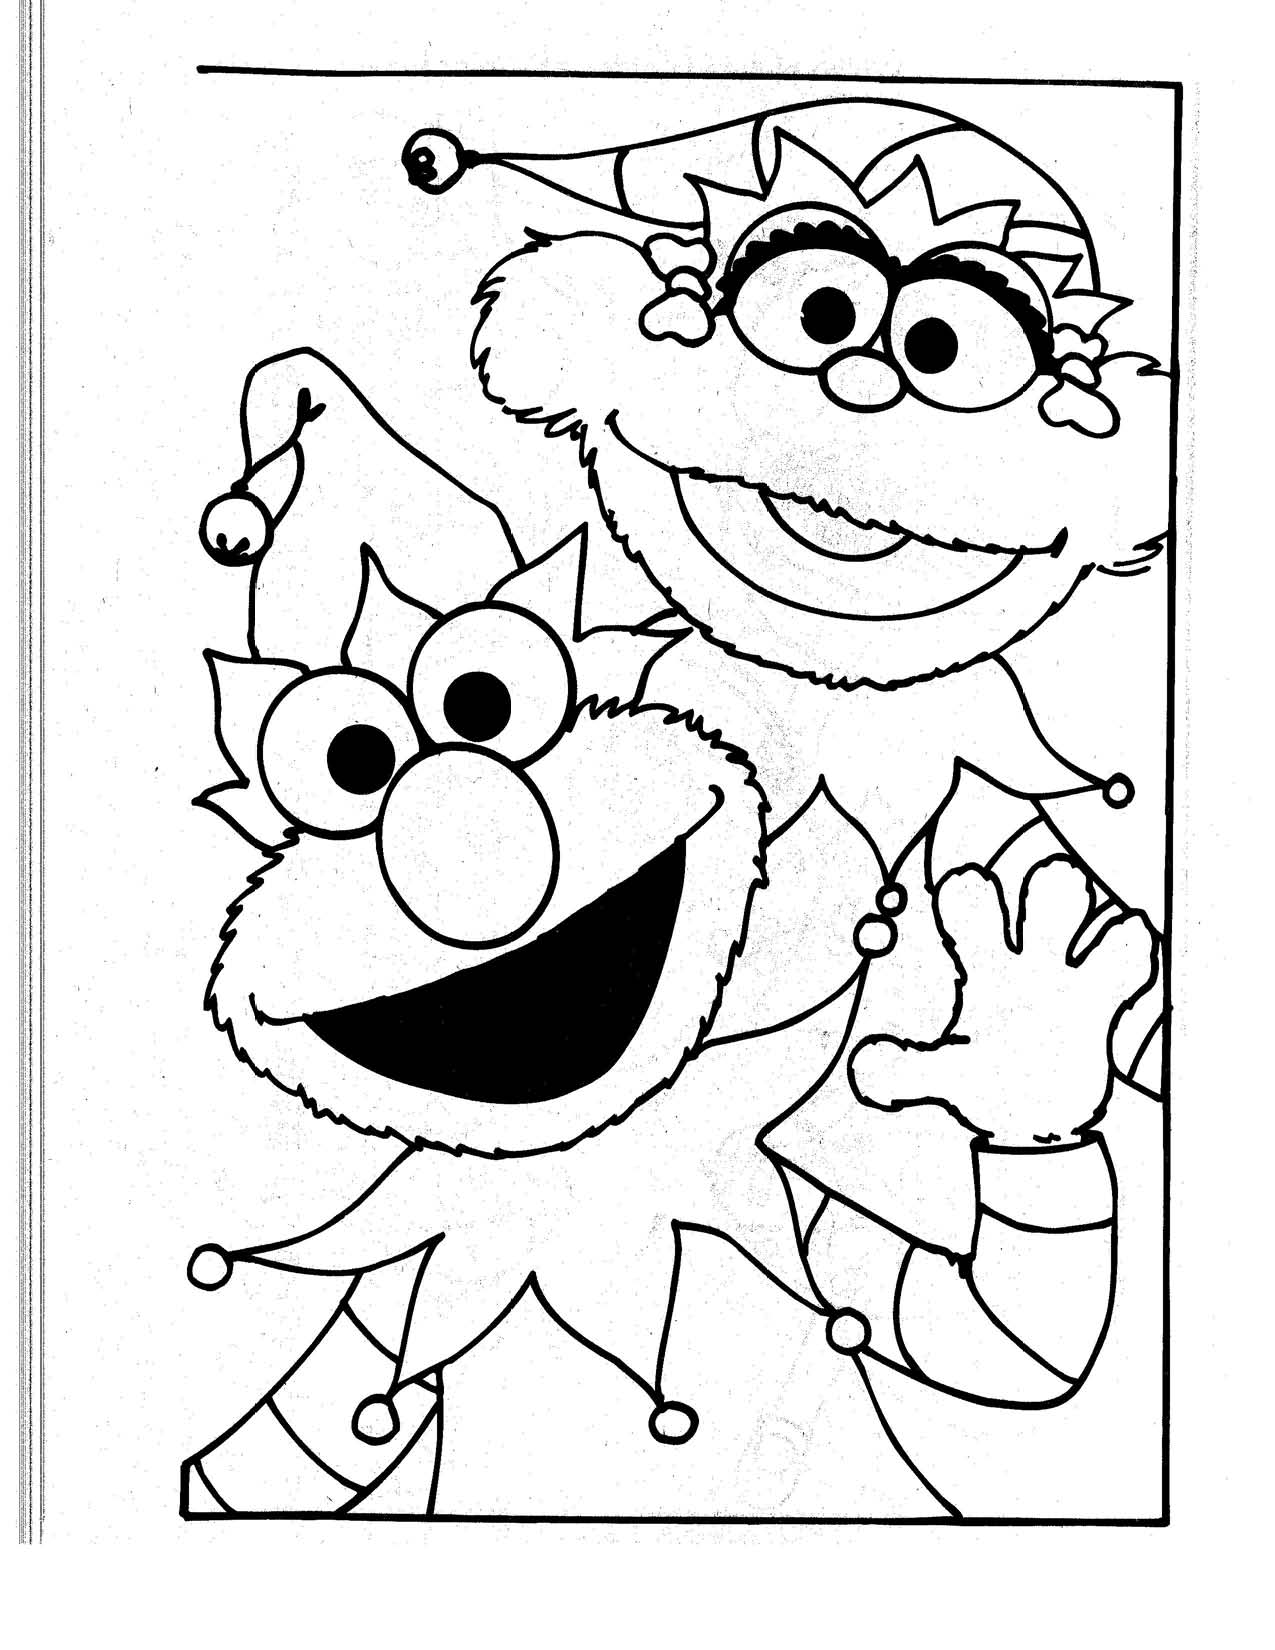 Gambar Free Printable Elmo Coloring Pages Kids Abby di Rebanas - Rebanas